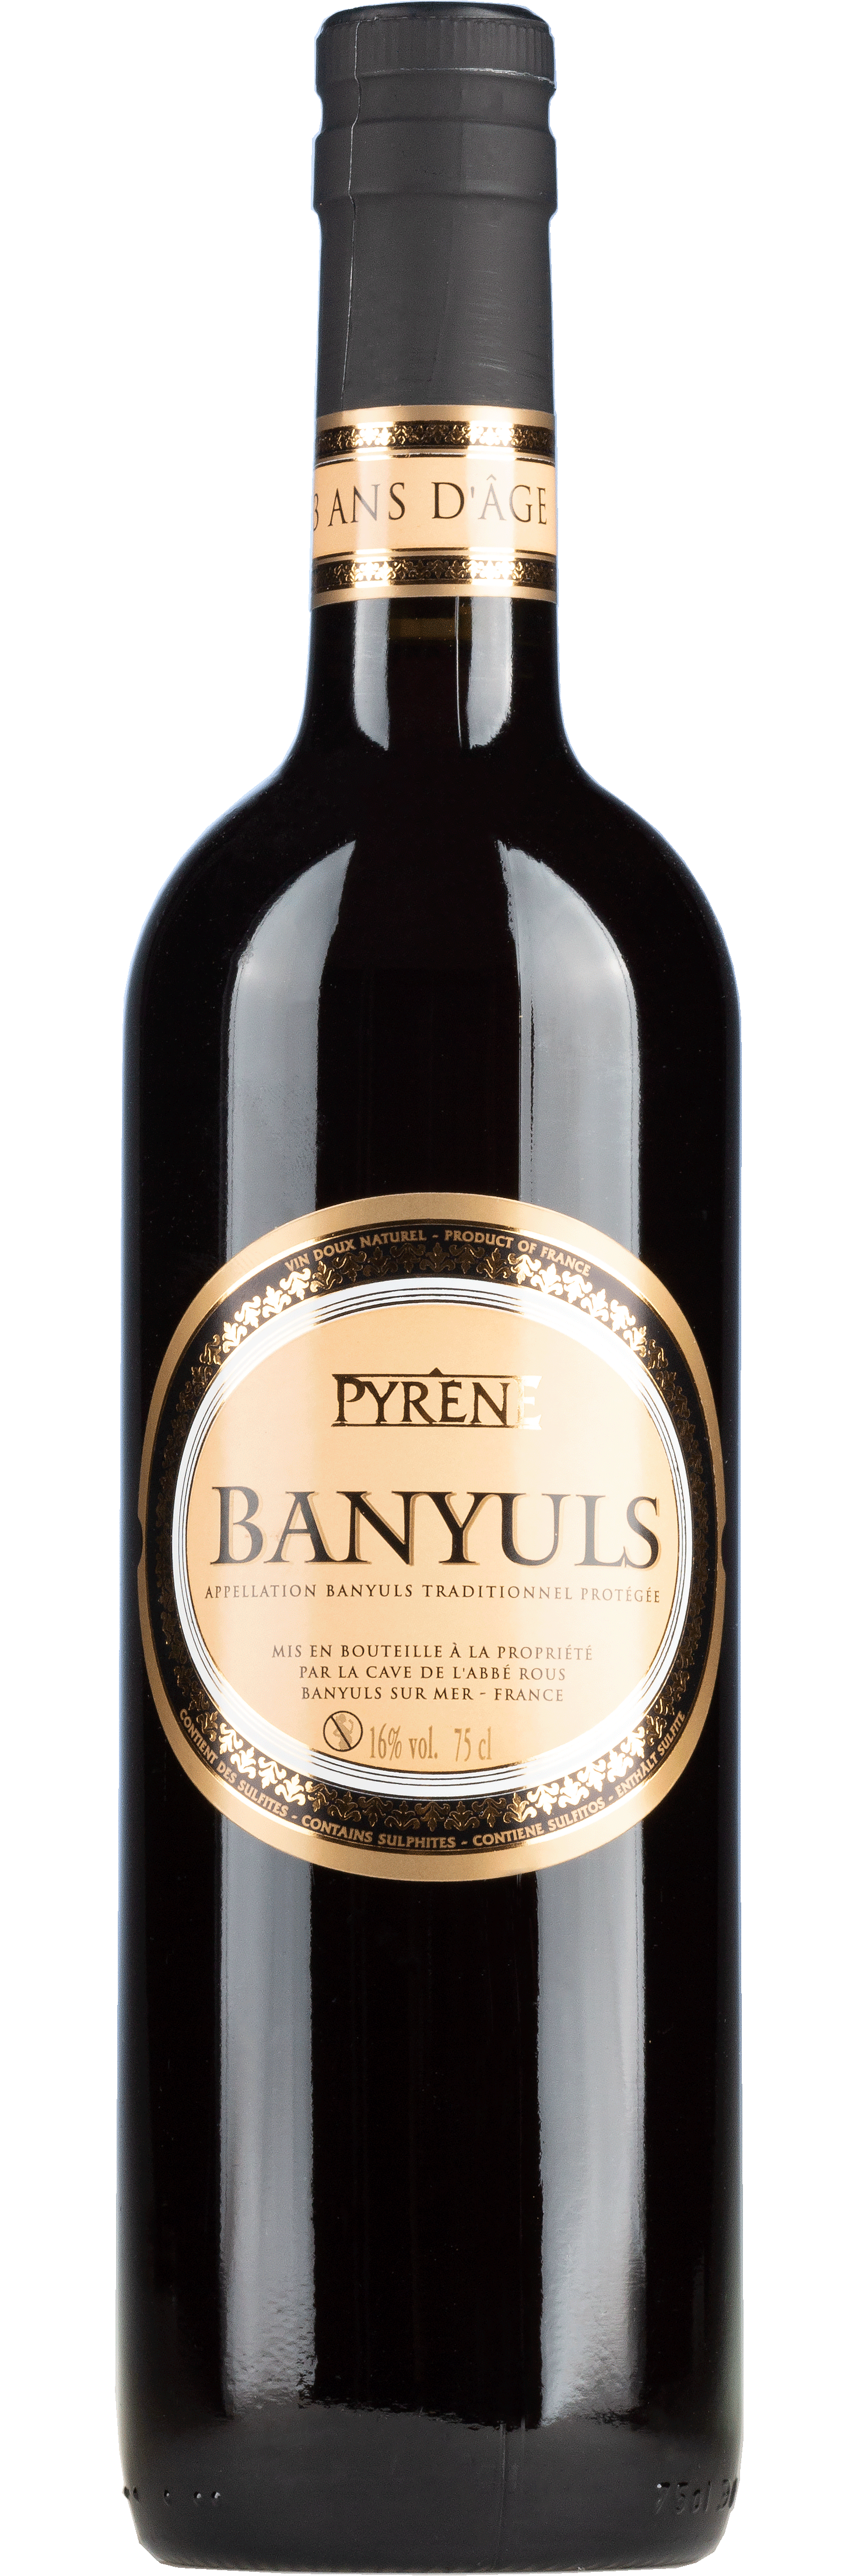 Banyuls Pyrene -roter Likörwein- 0,75l - 16% vol.